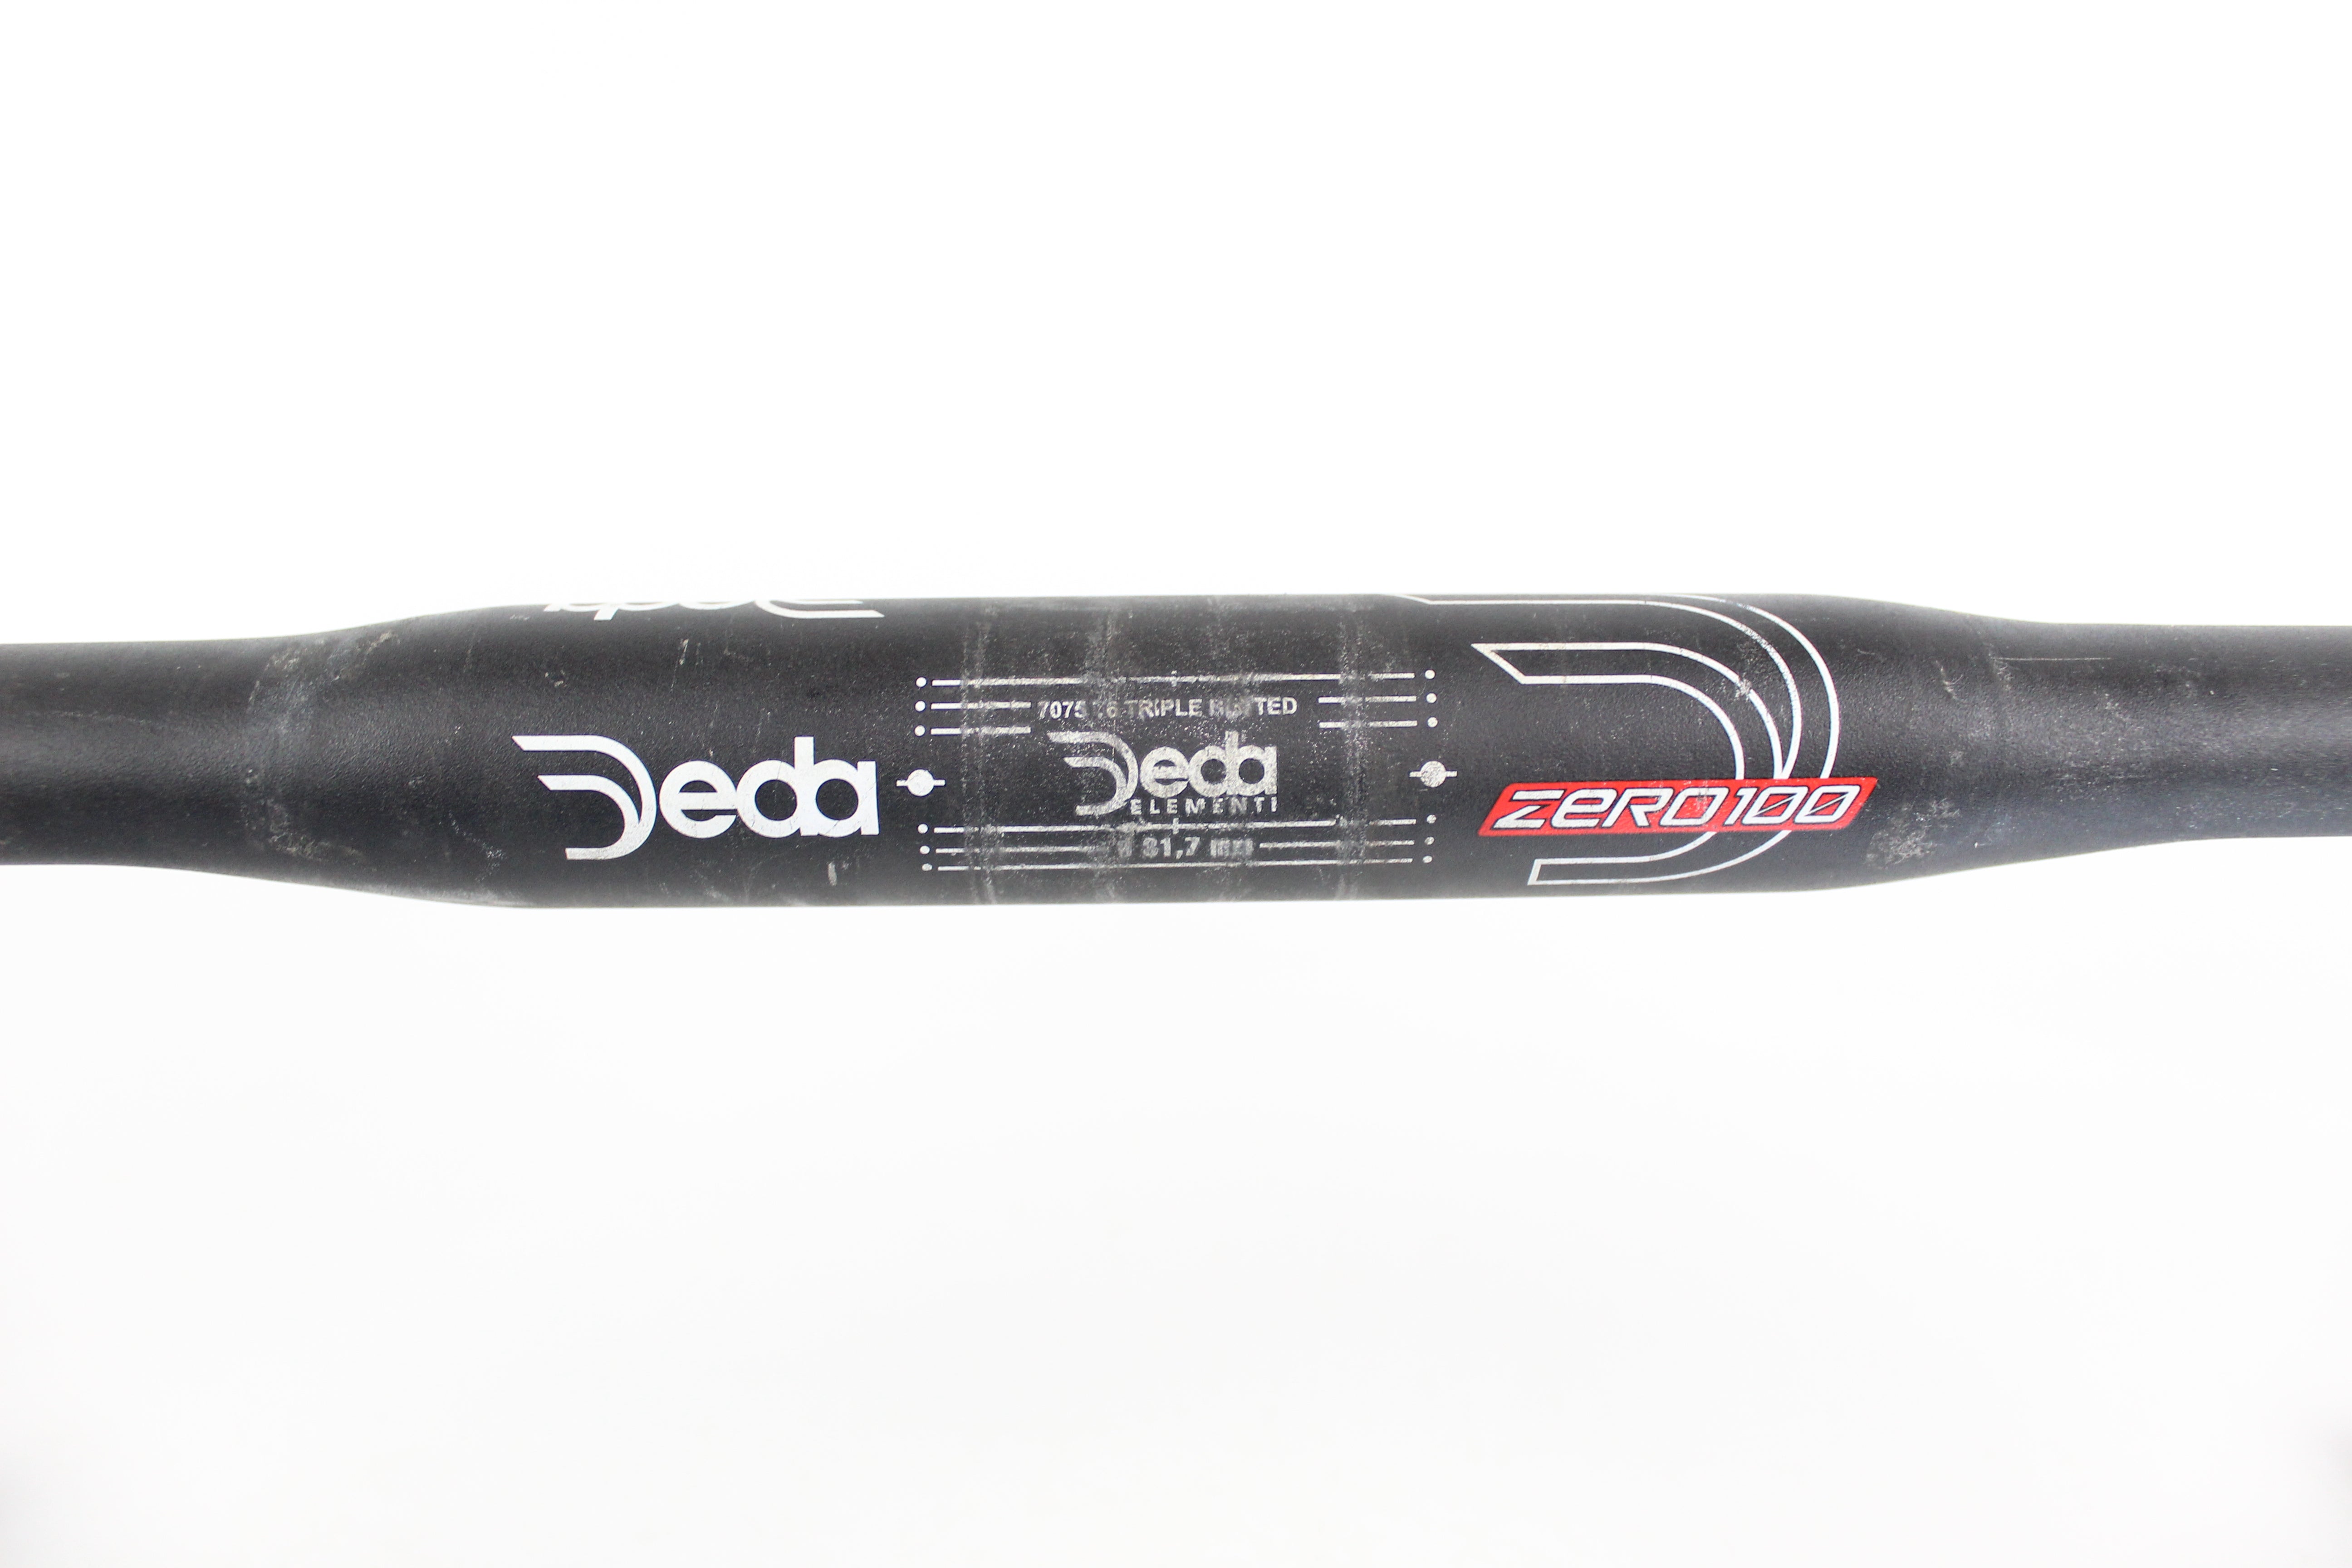 Drop Handlebar - Deda Zero100 - 460mm 31.8mm Clamp - Grade C+